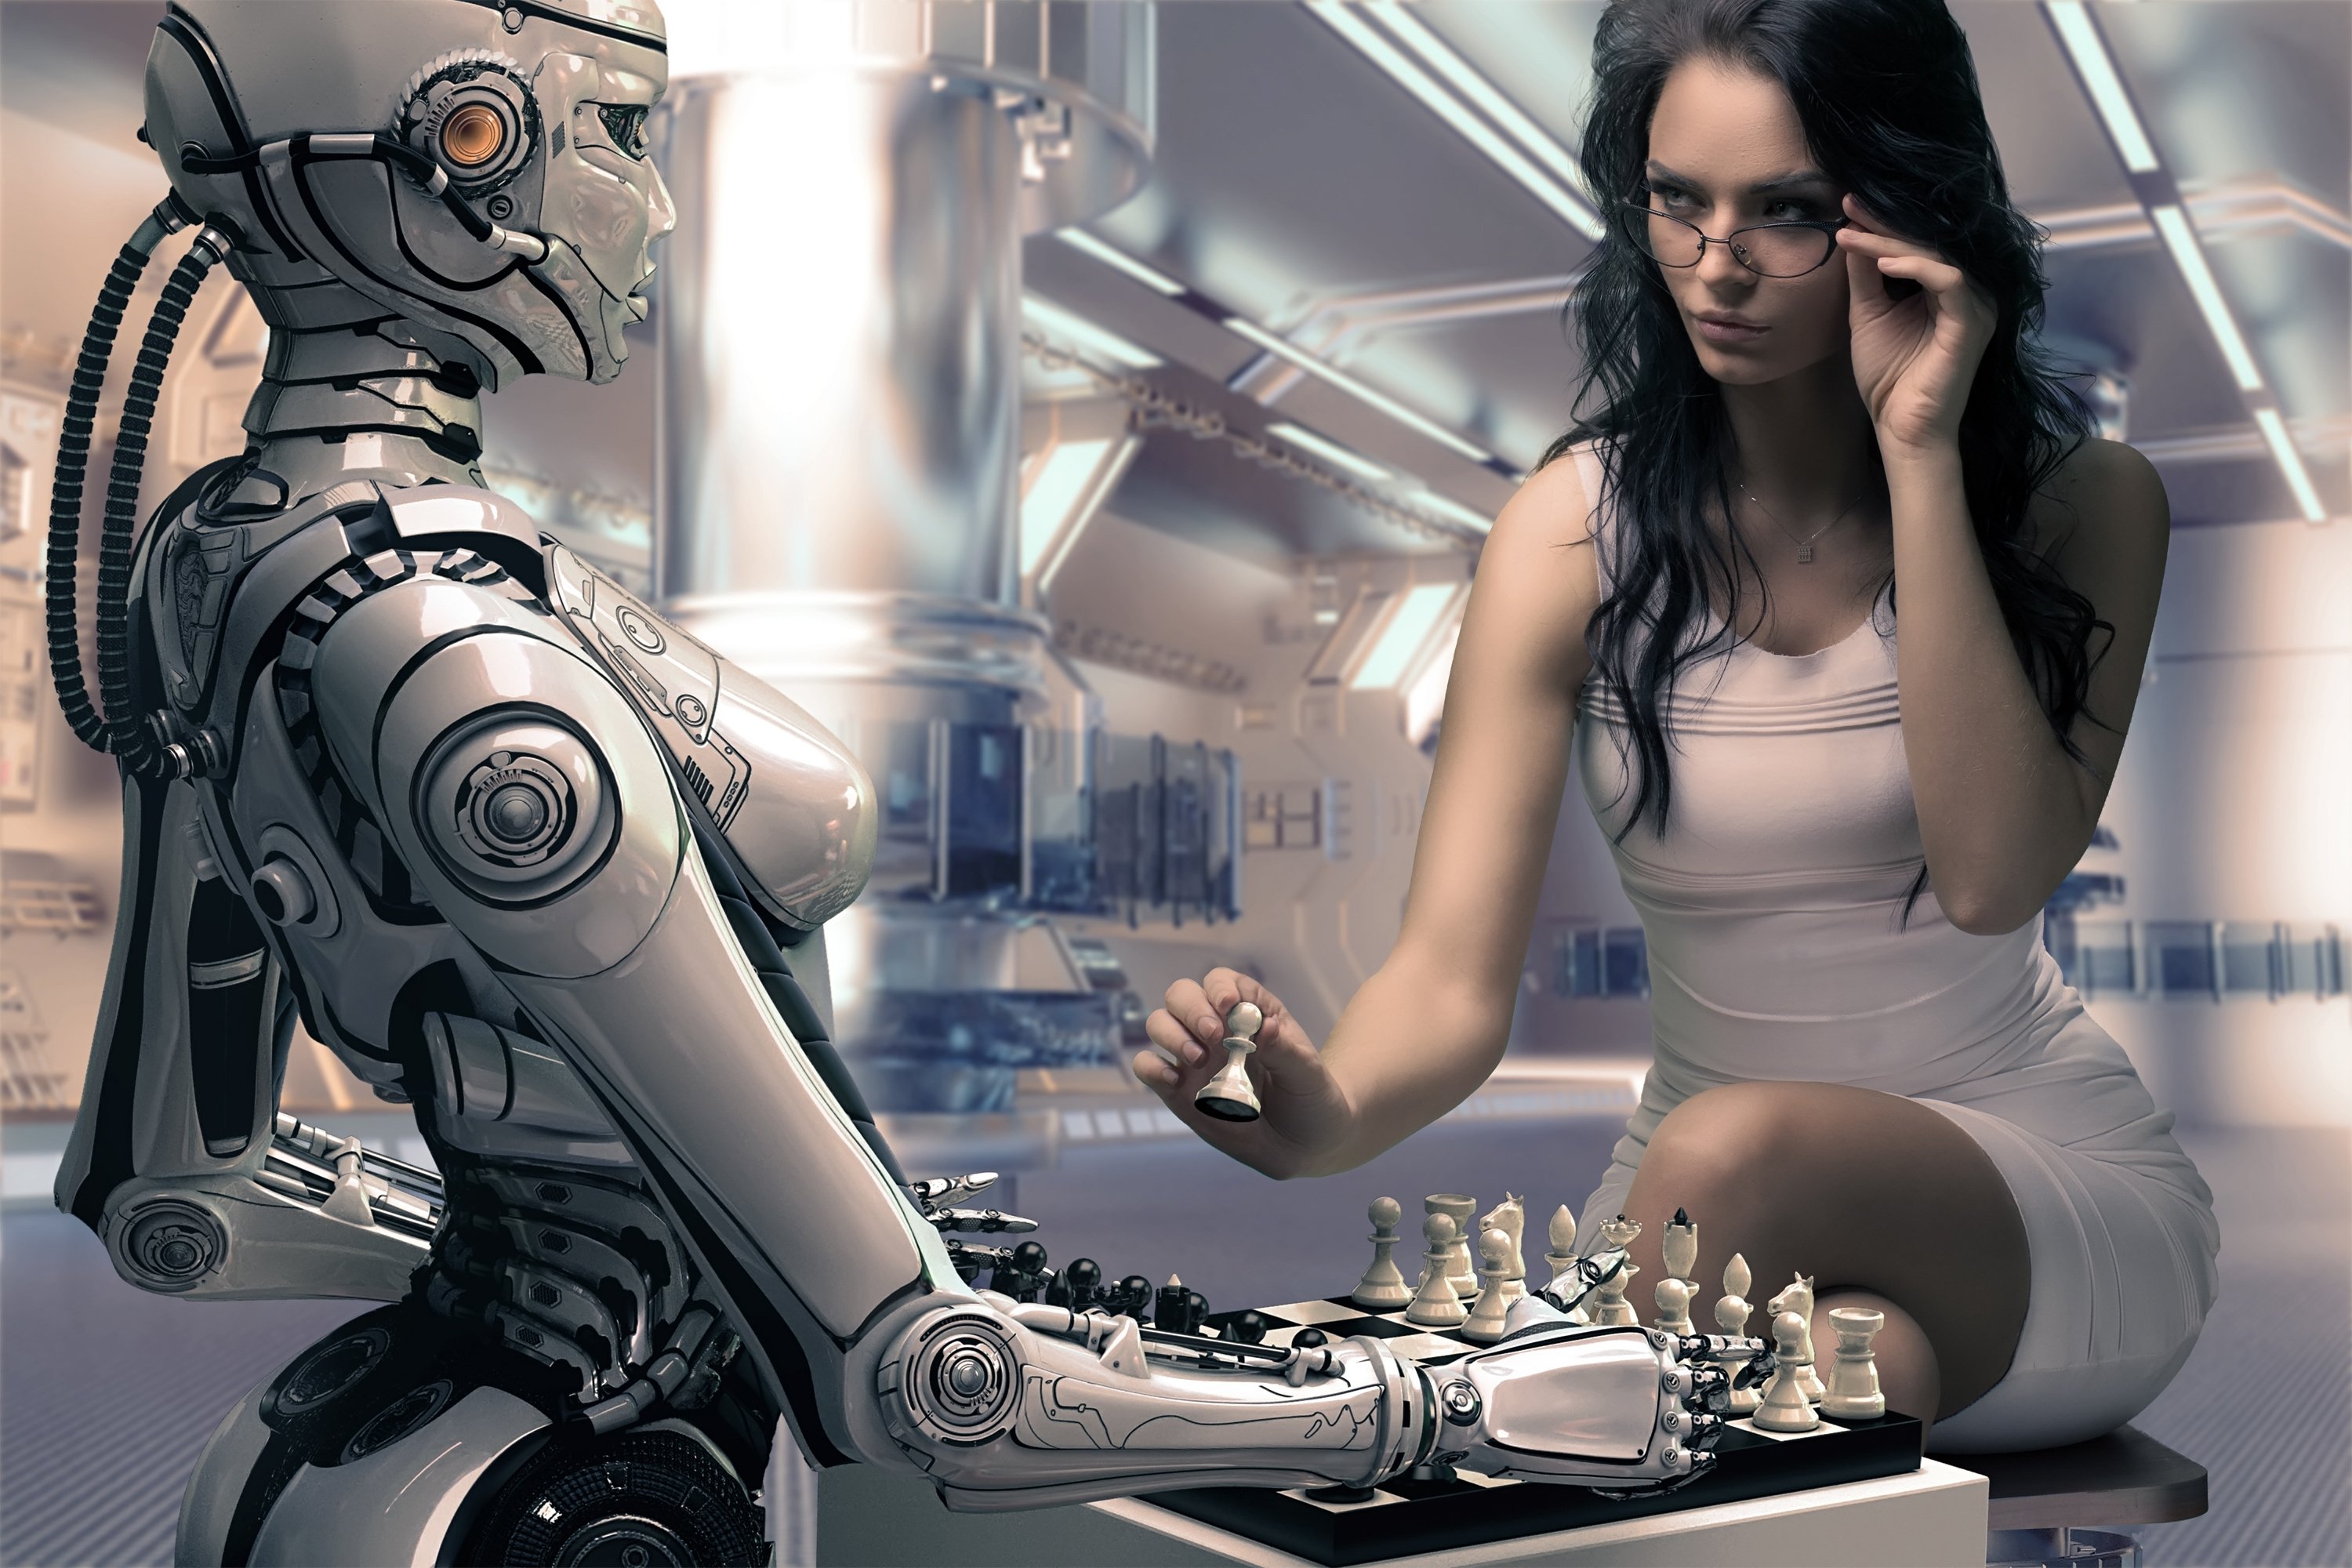 robot-girl-chess-rendering-xo9k.jpg